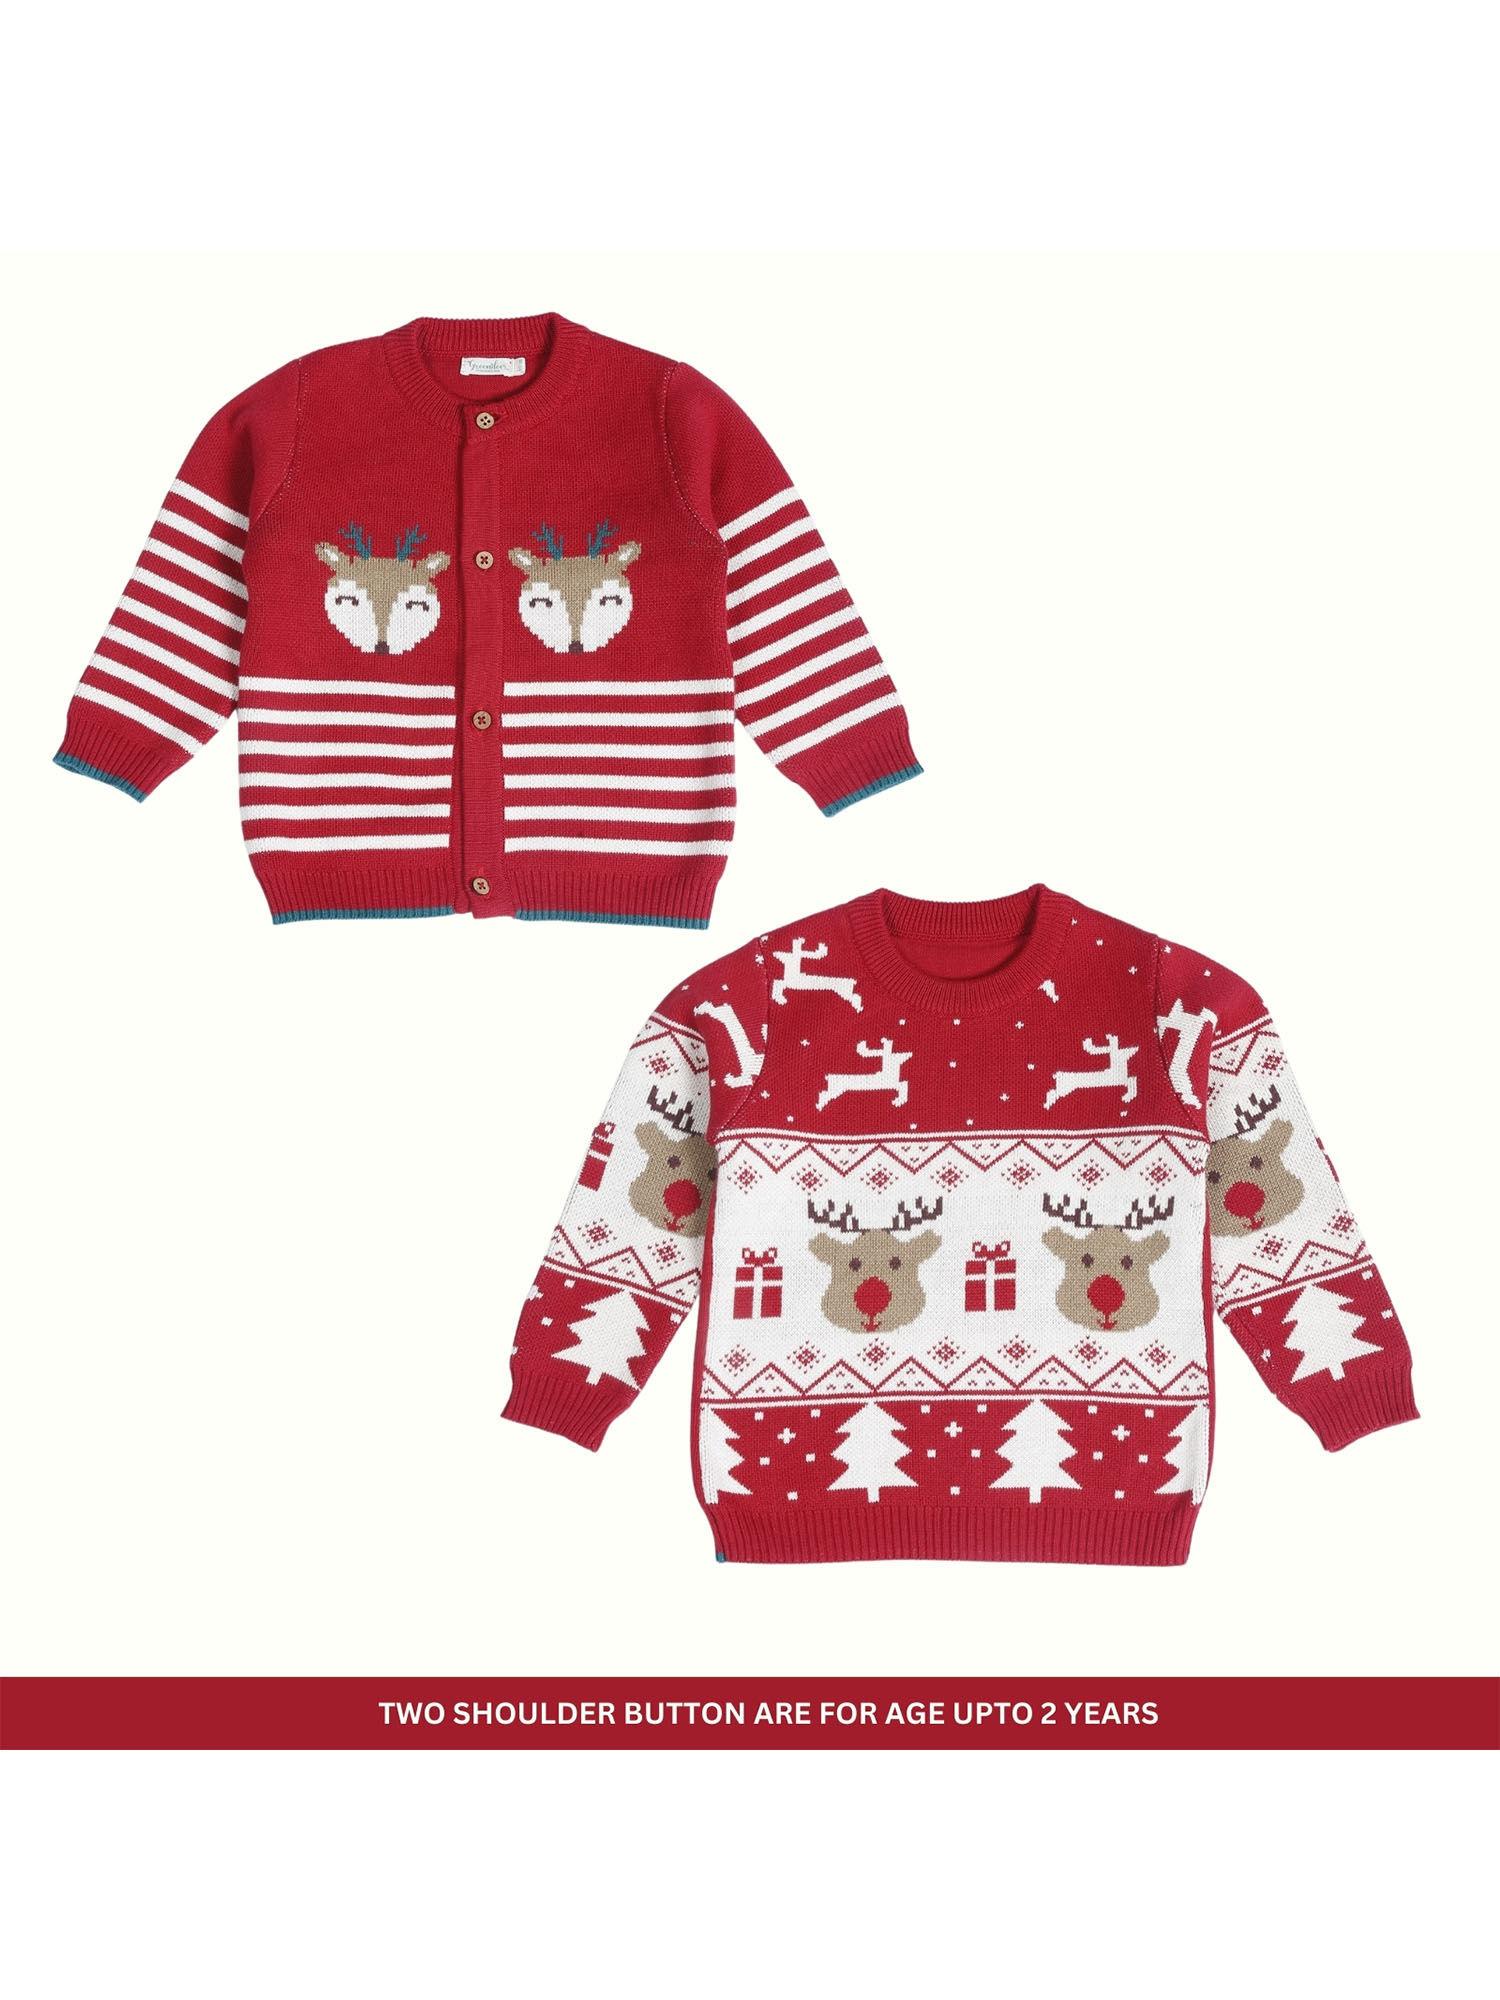 jaunty reindeer joyful reindeer 2 sweaters (set of 2)